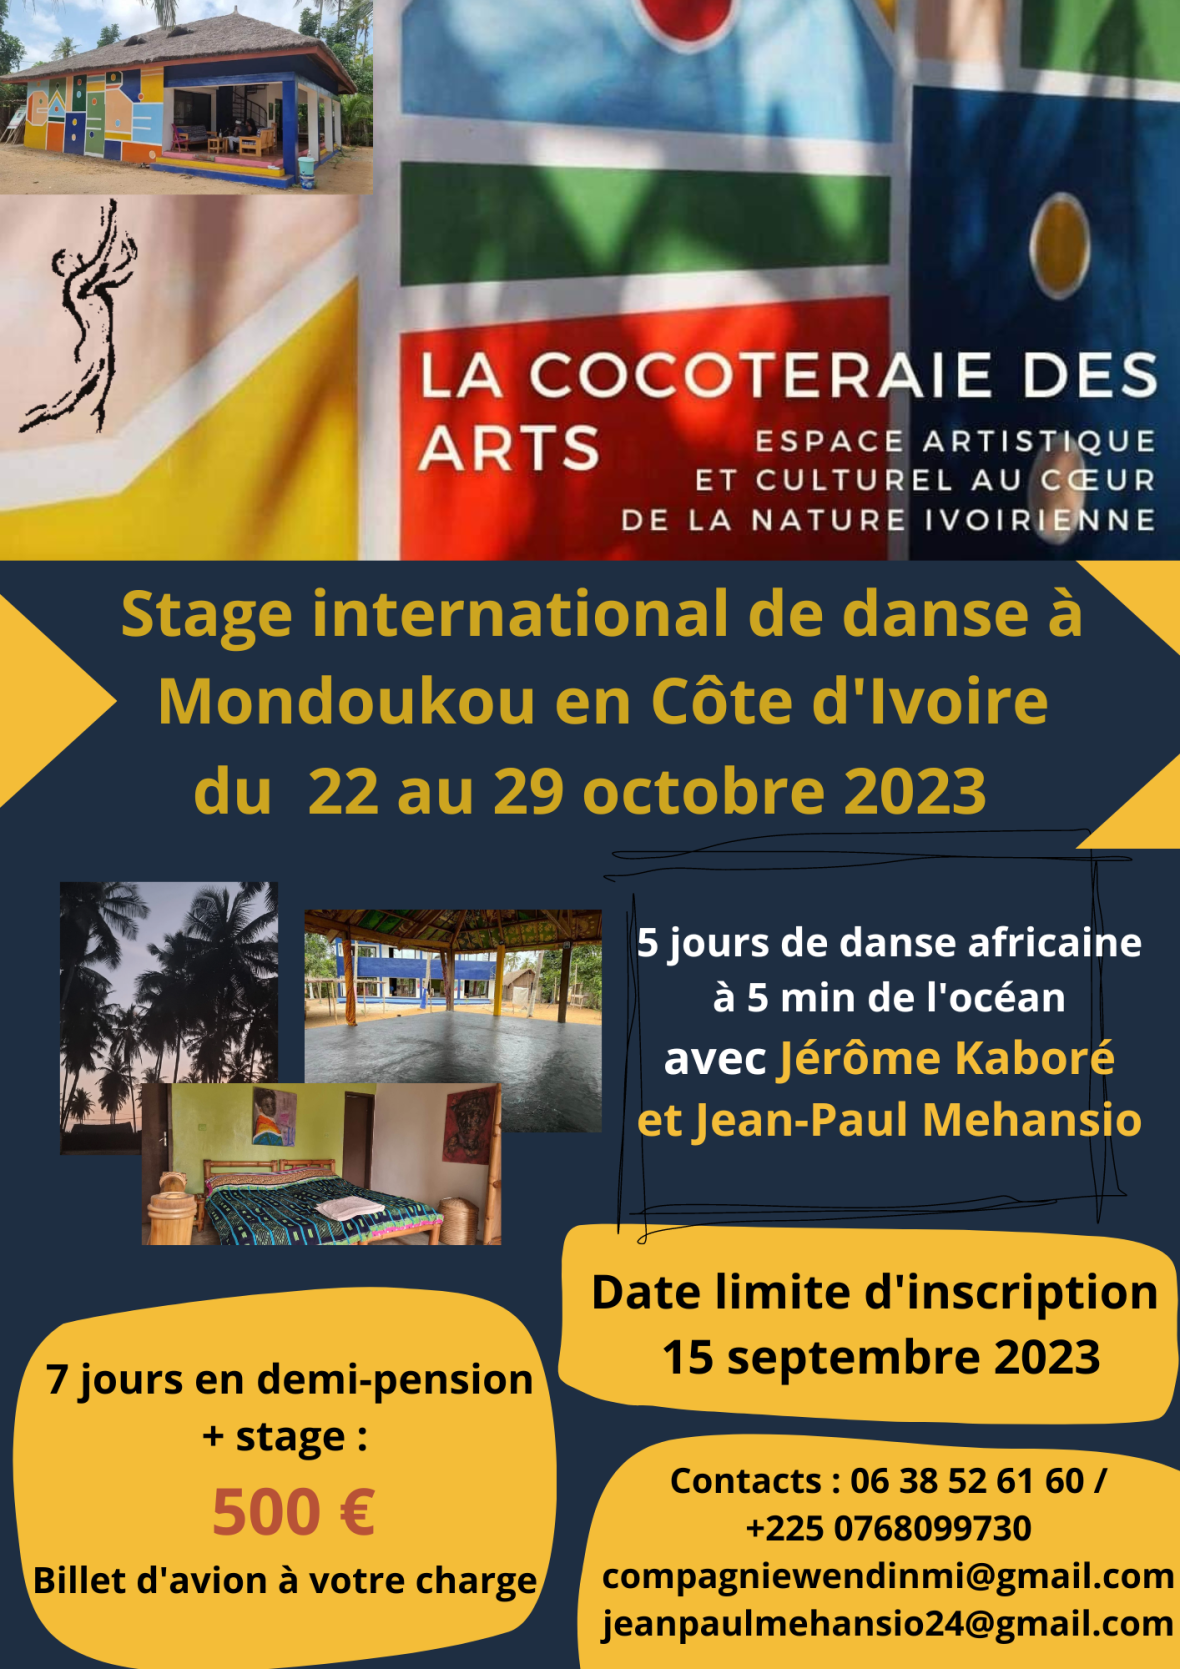 Stage international de danse à Mondoukou en Côte d’Ivoire